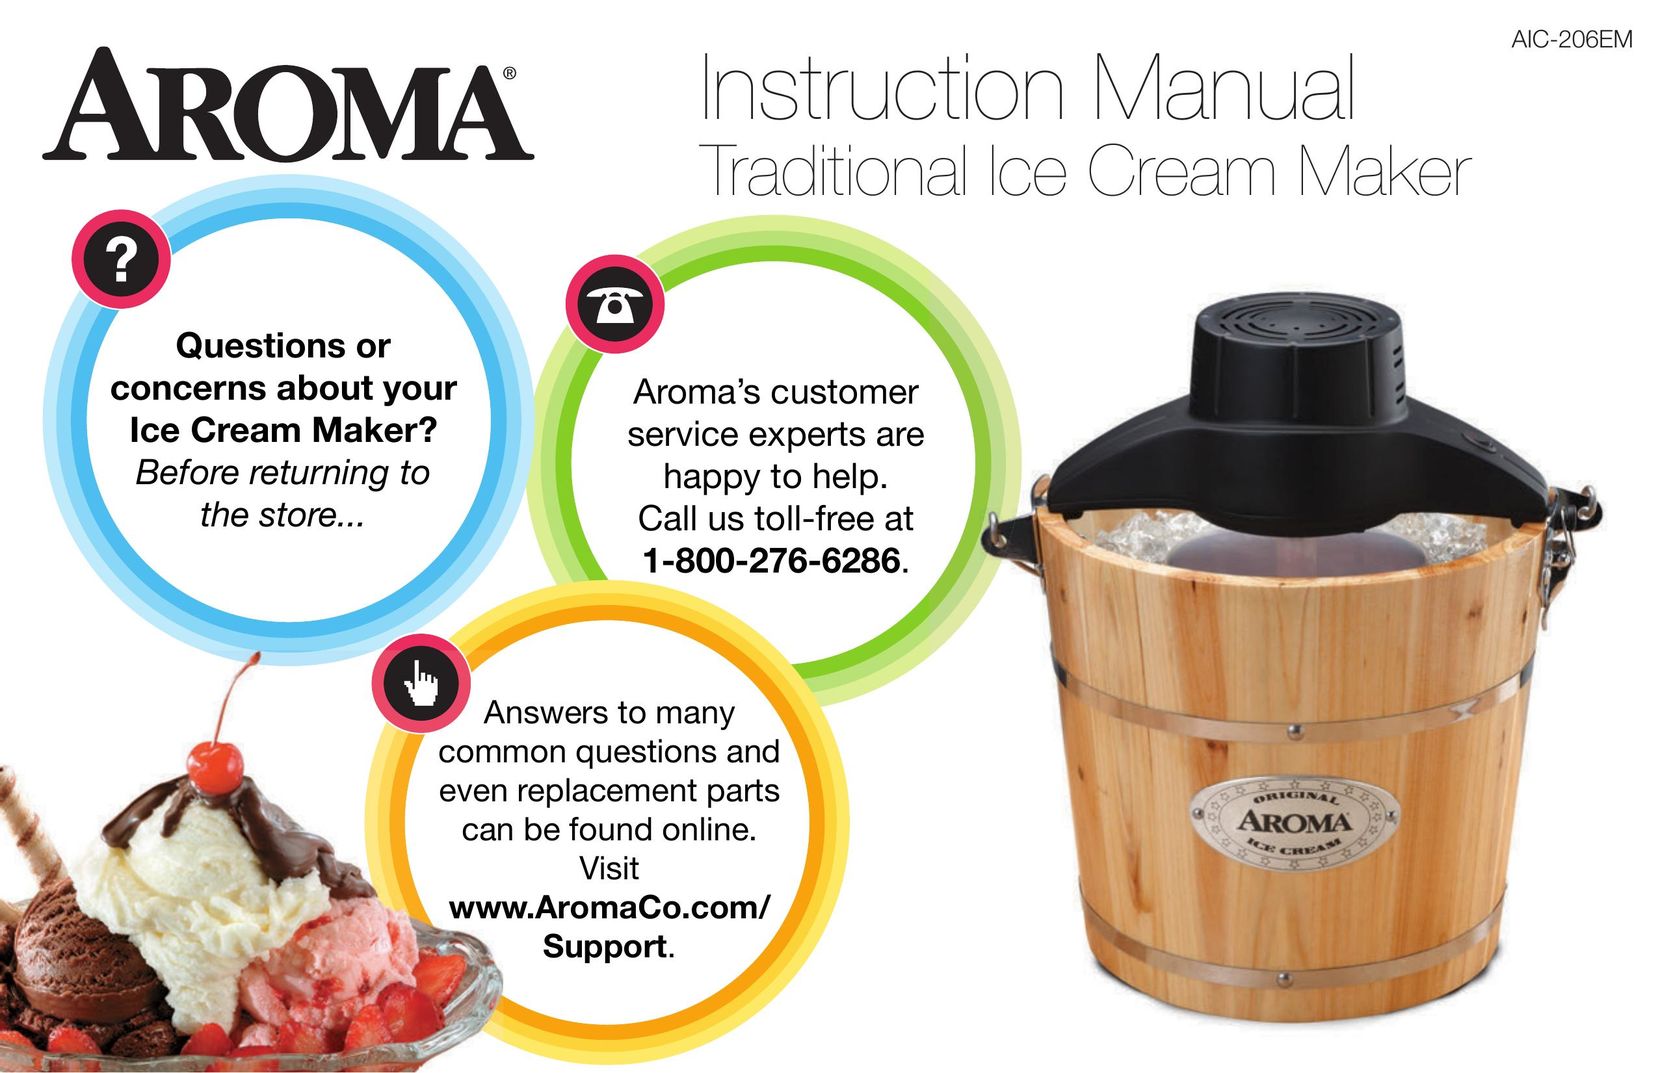 Aroma AIC-206EM Frozen Dessert Maker User Manual